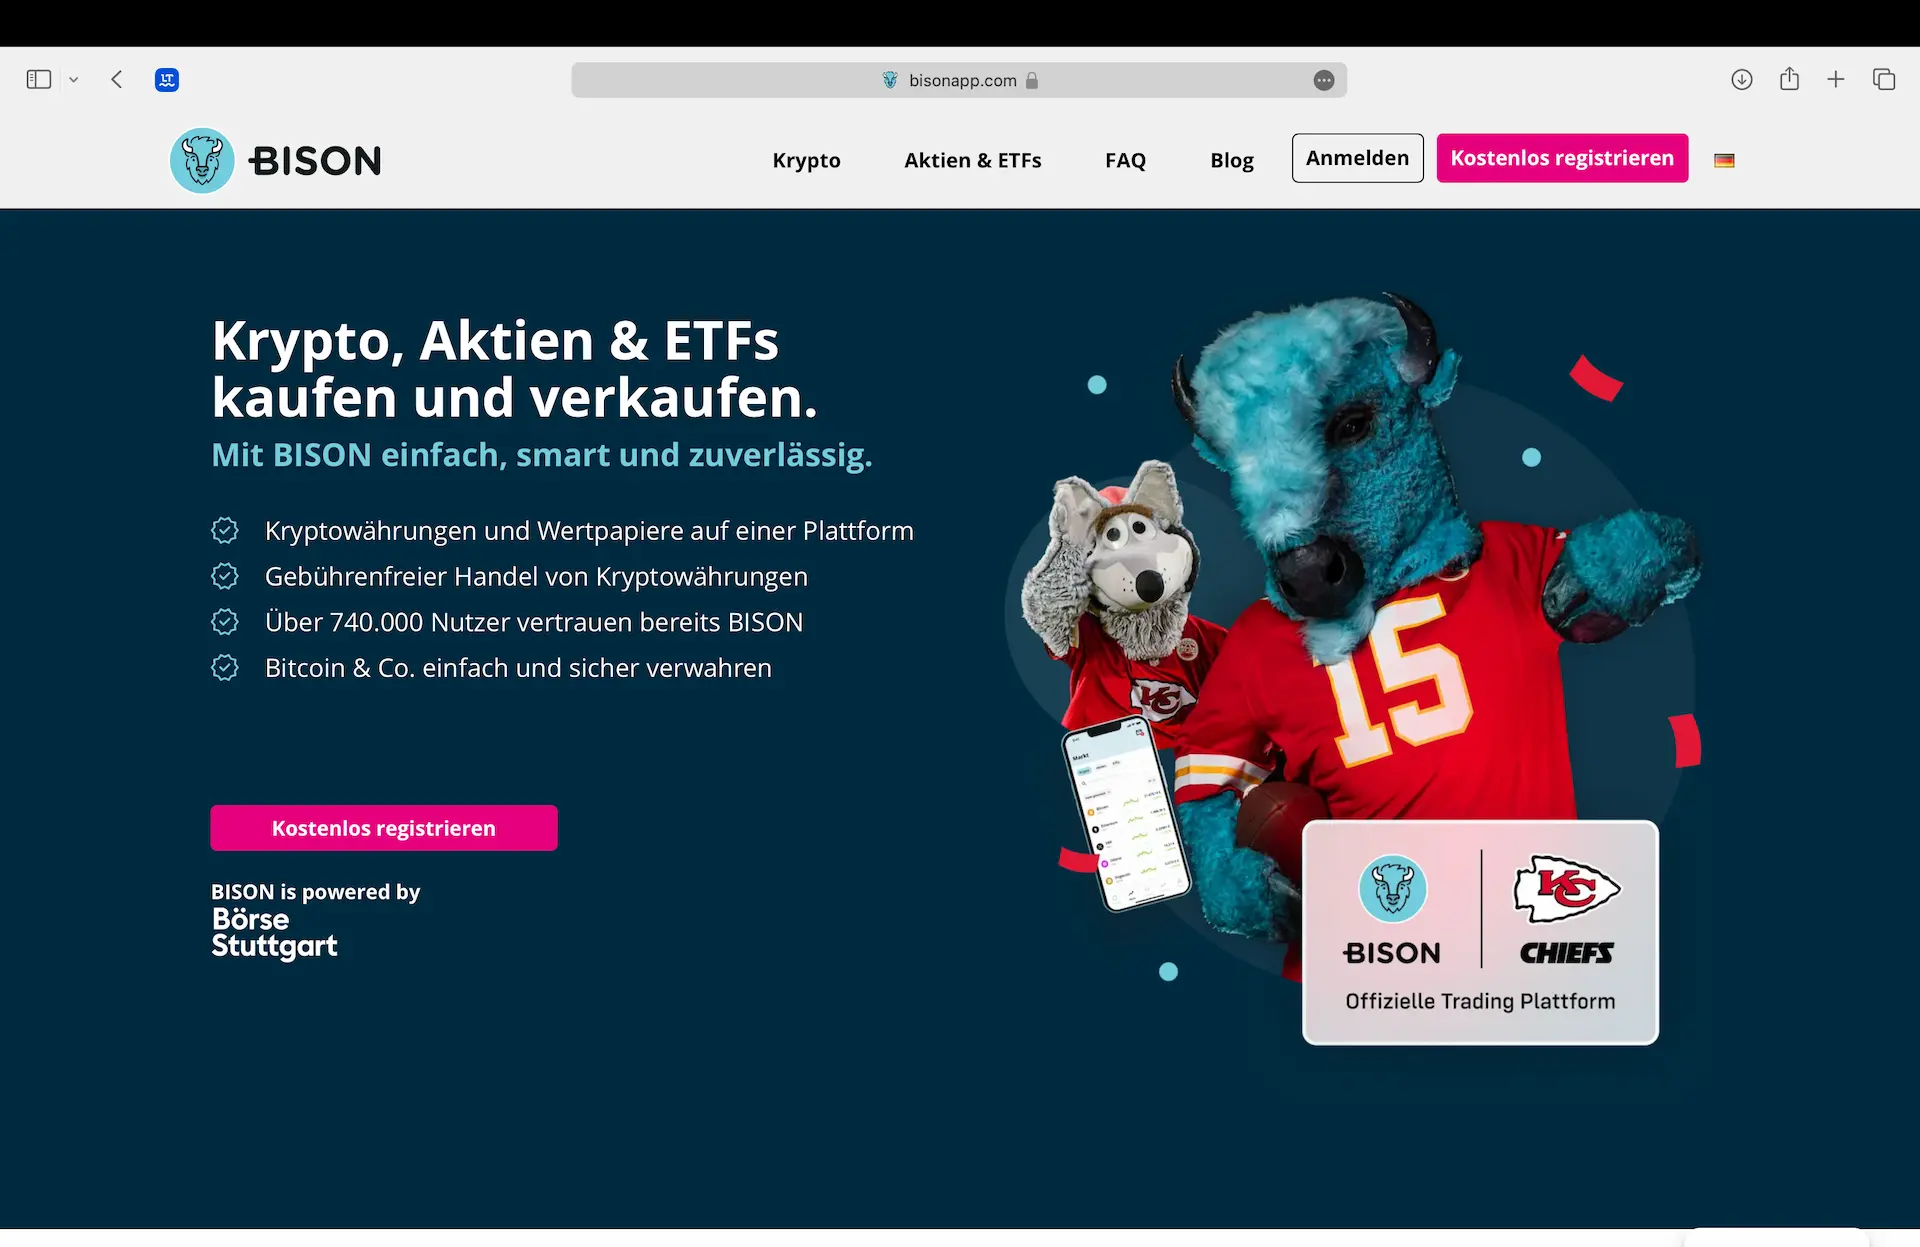 Startseite der Bison App der Börse Stuttgart